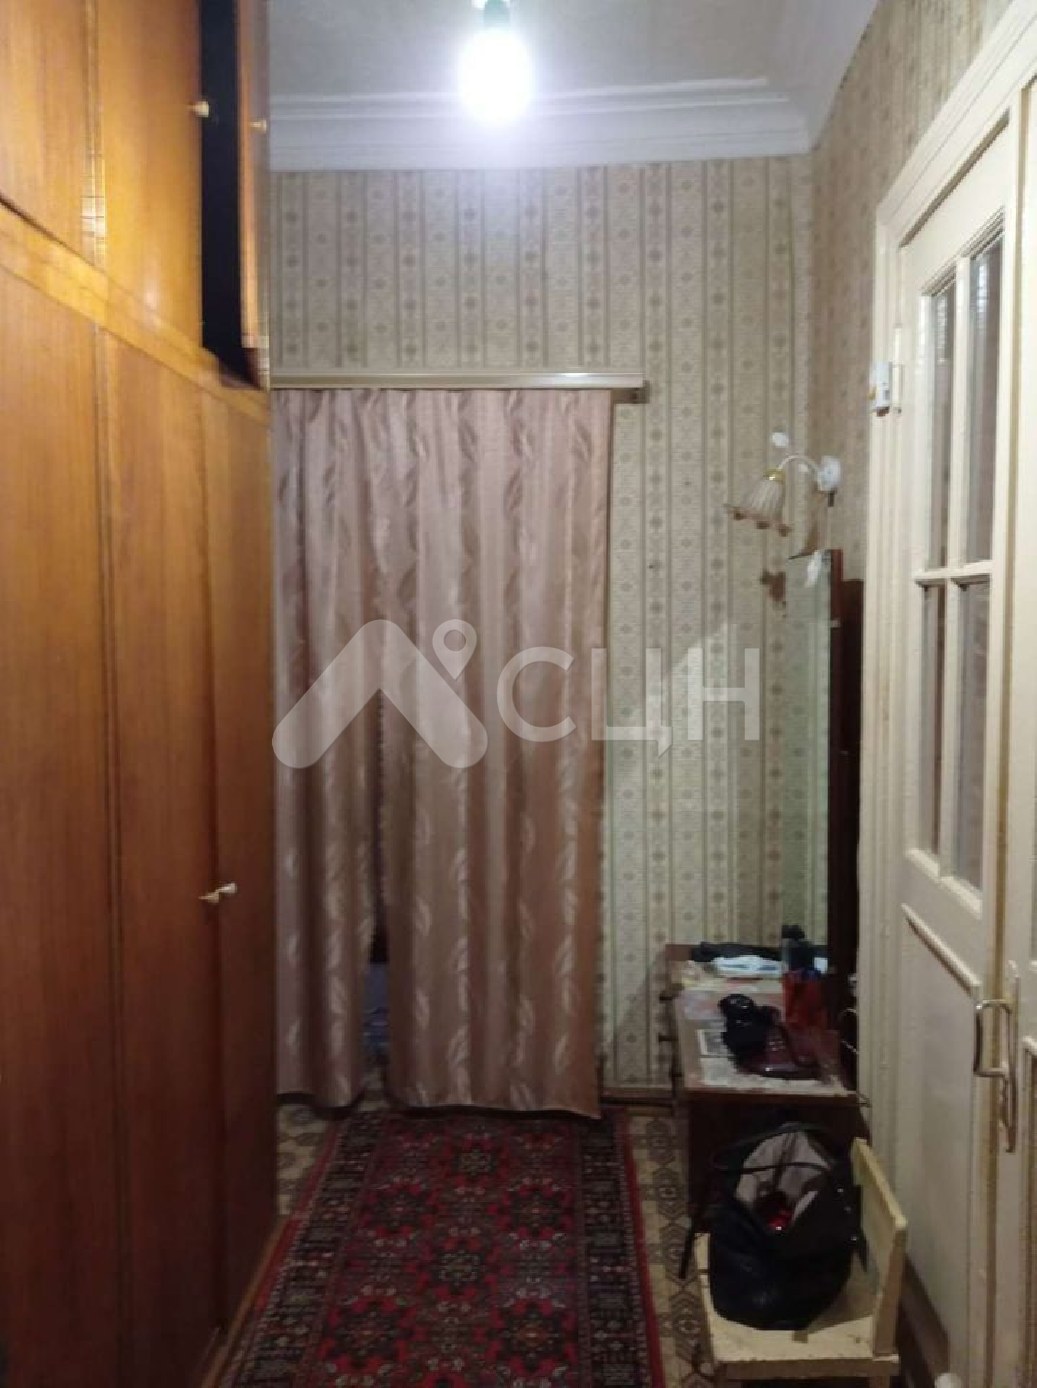 Цены на жилье в Сарове
: Г. Саров, улица Ушакова, 18, 2-комн квартира, этаж 2 из 3, продажа.